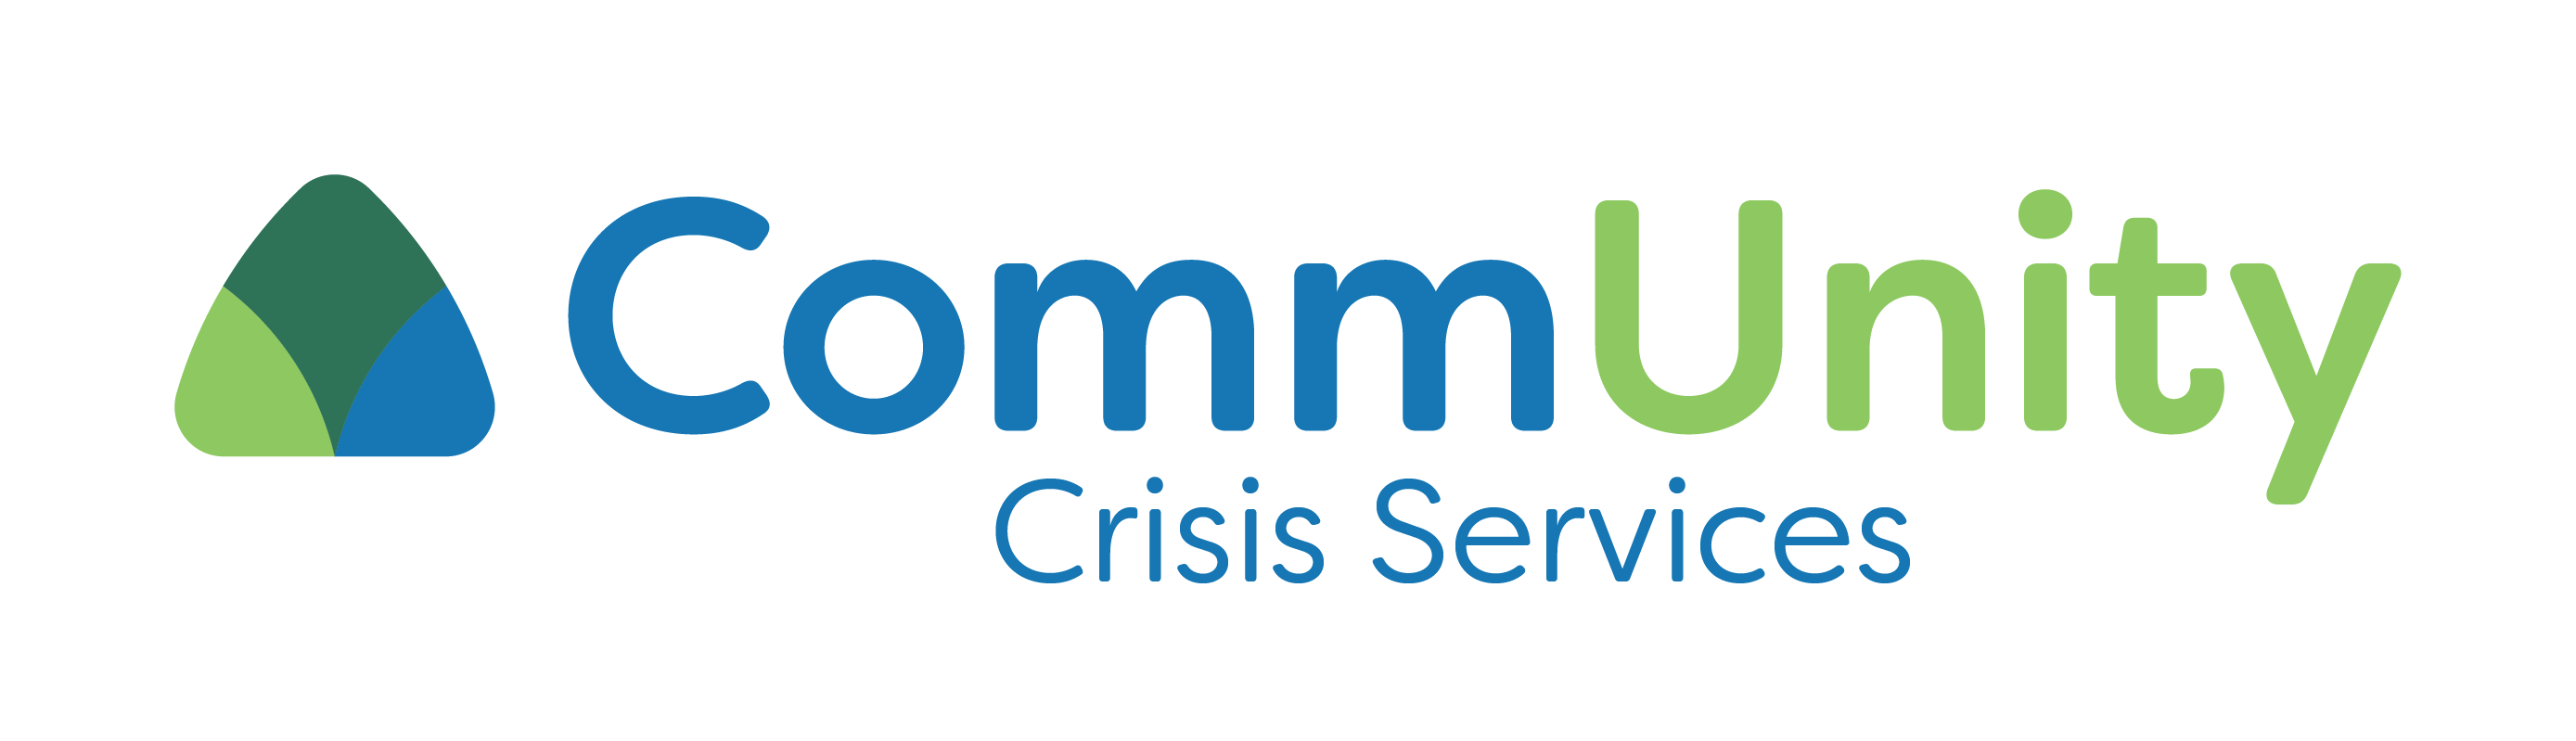 CommUnity Crisis Services logo